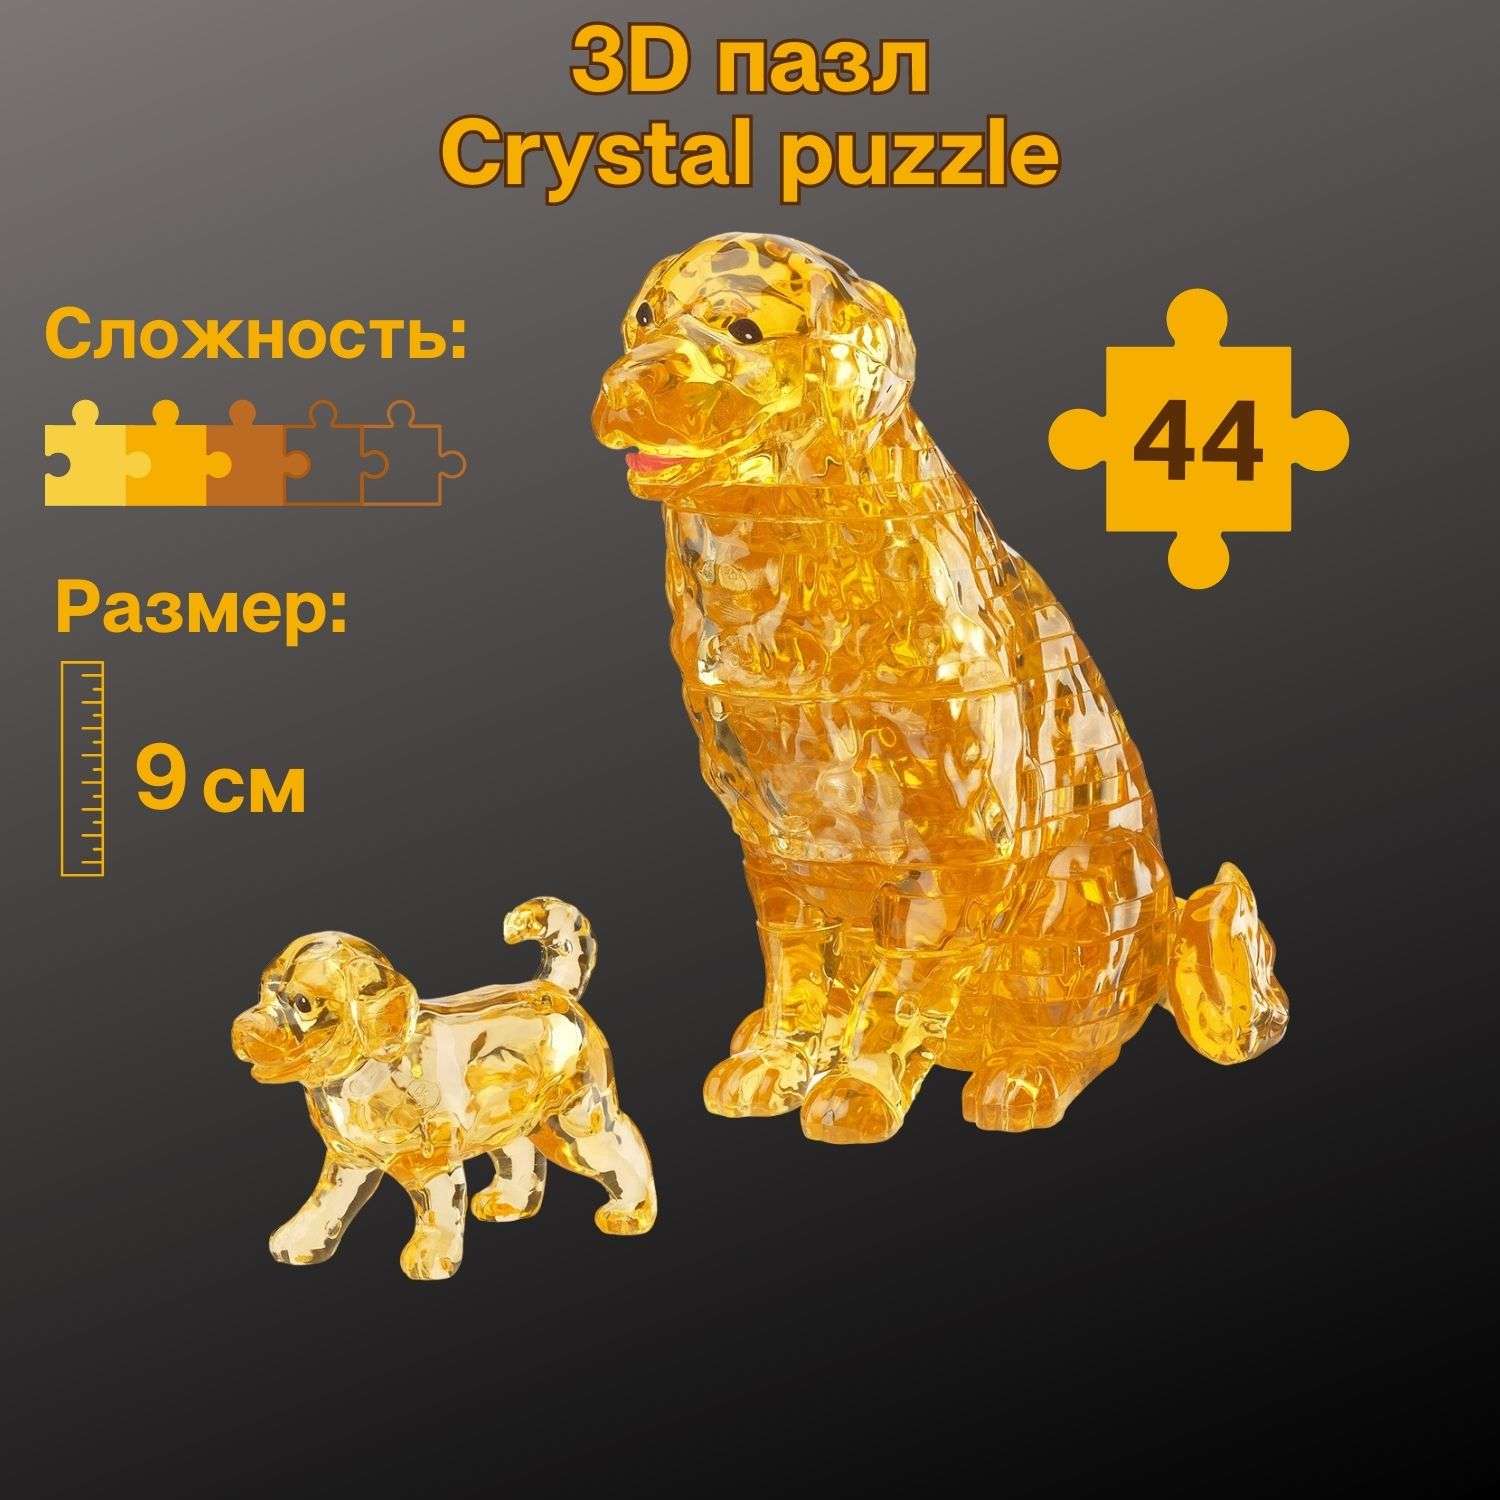 3D-пазл Crystal Puzzle IQ игра для детей кристальные Лабрадоры 44 детали - фото 1